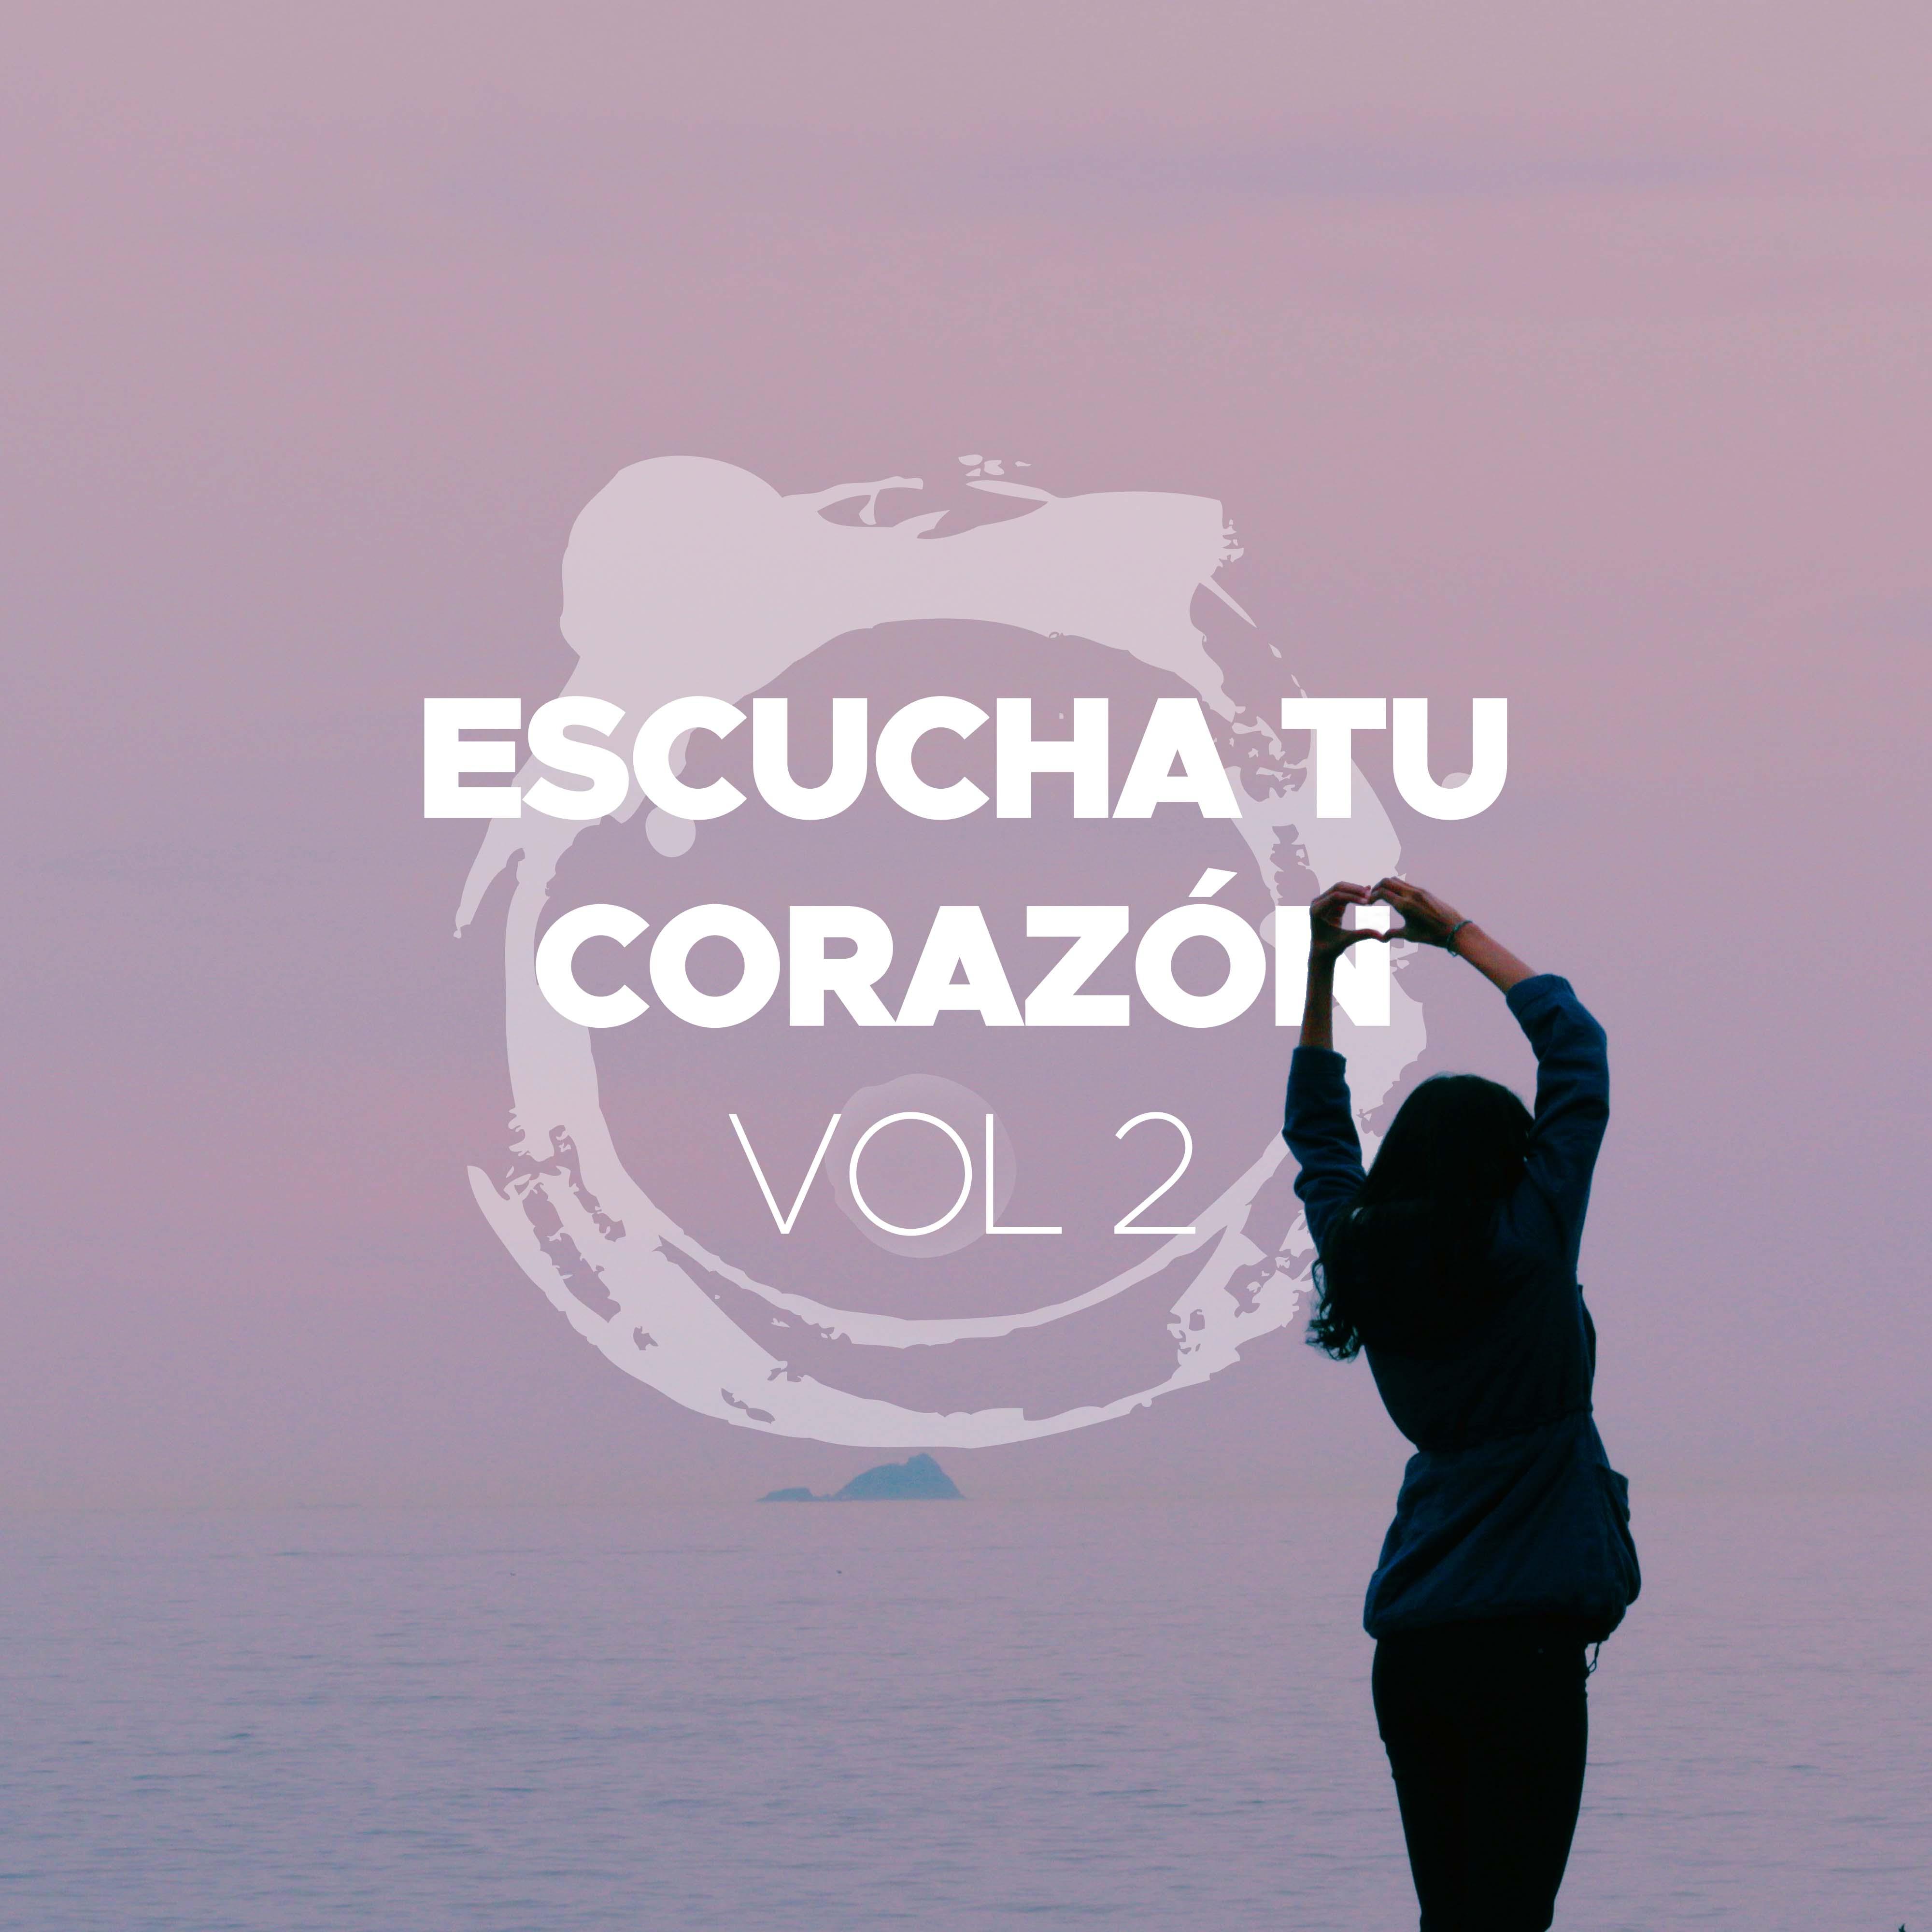 Escucha tu Corazo n Vol 2  Musica Instrumental de Piano para Cenas Romanticas con Musica Relajante New Age y Sonidos de la Naturaleza Lluvia, Viento y Olas del Mar